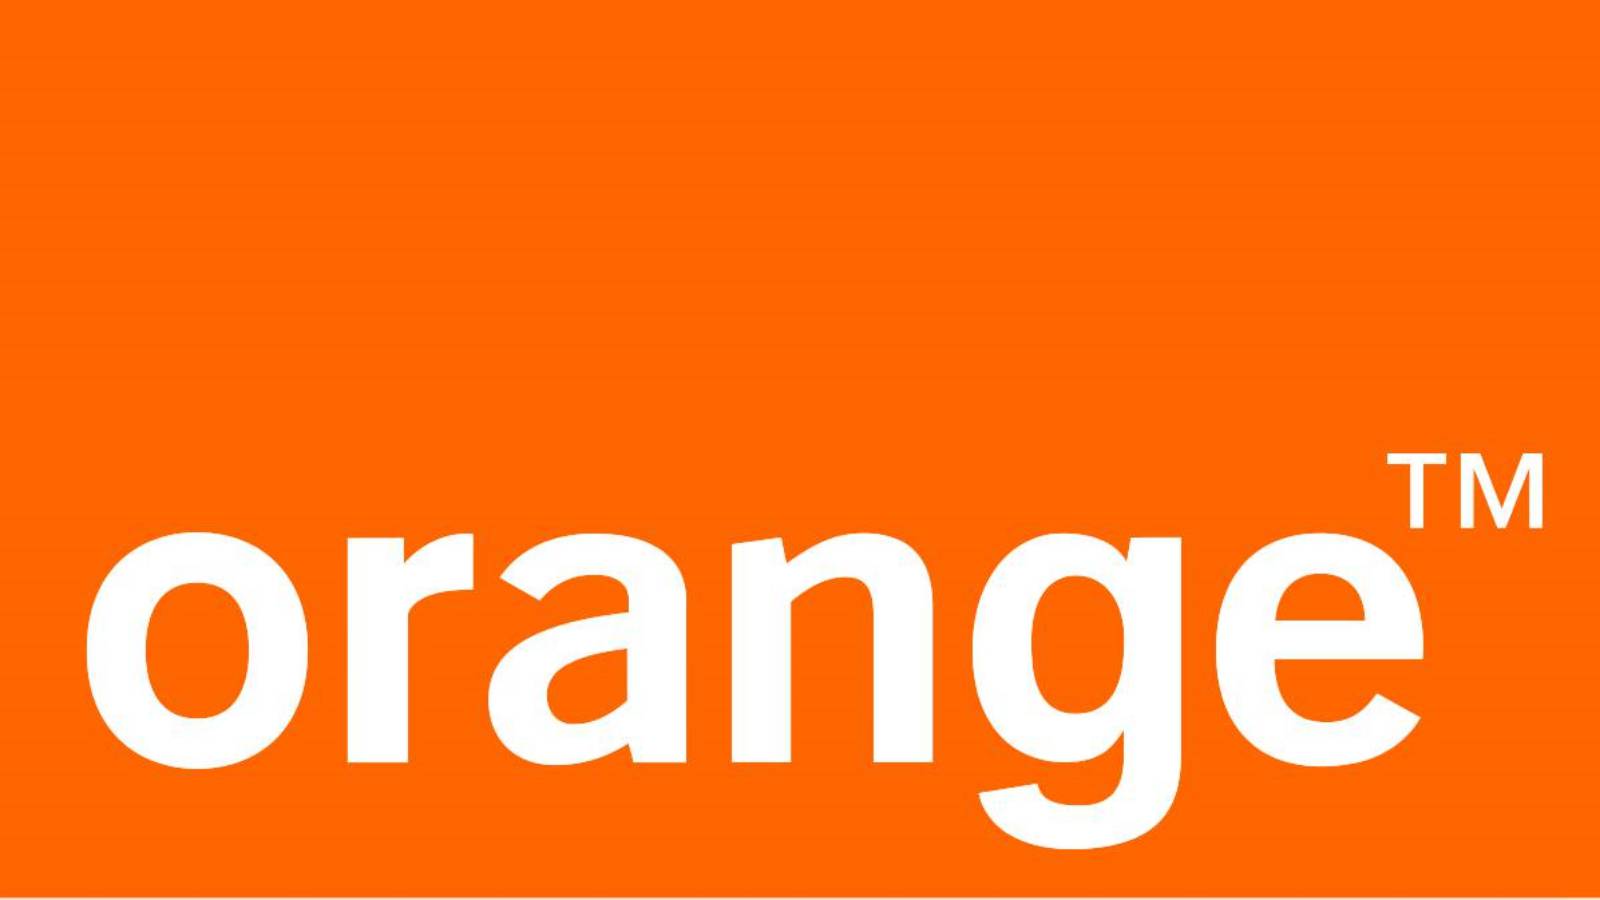 Incident Oficial ULTIM MOMENT Orange Anuntul Milioanele Clienti Romani